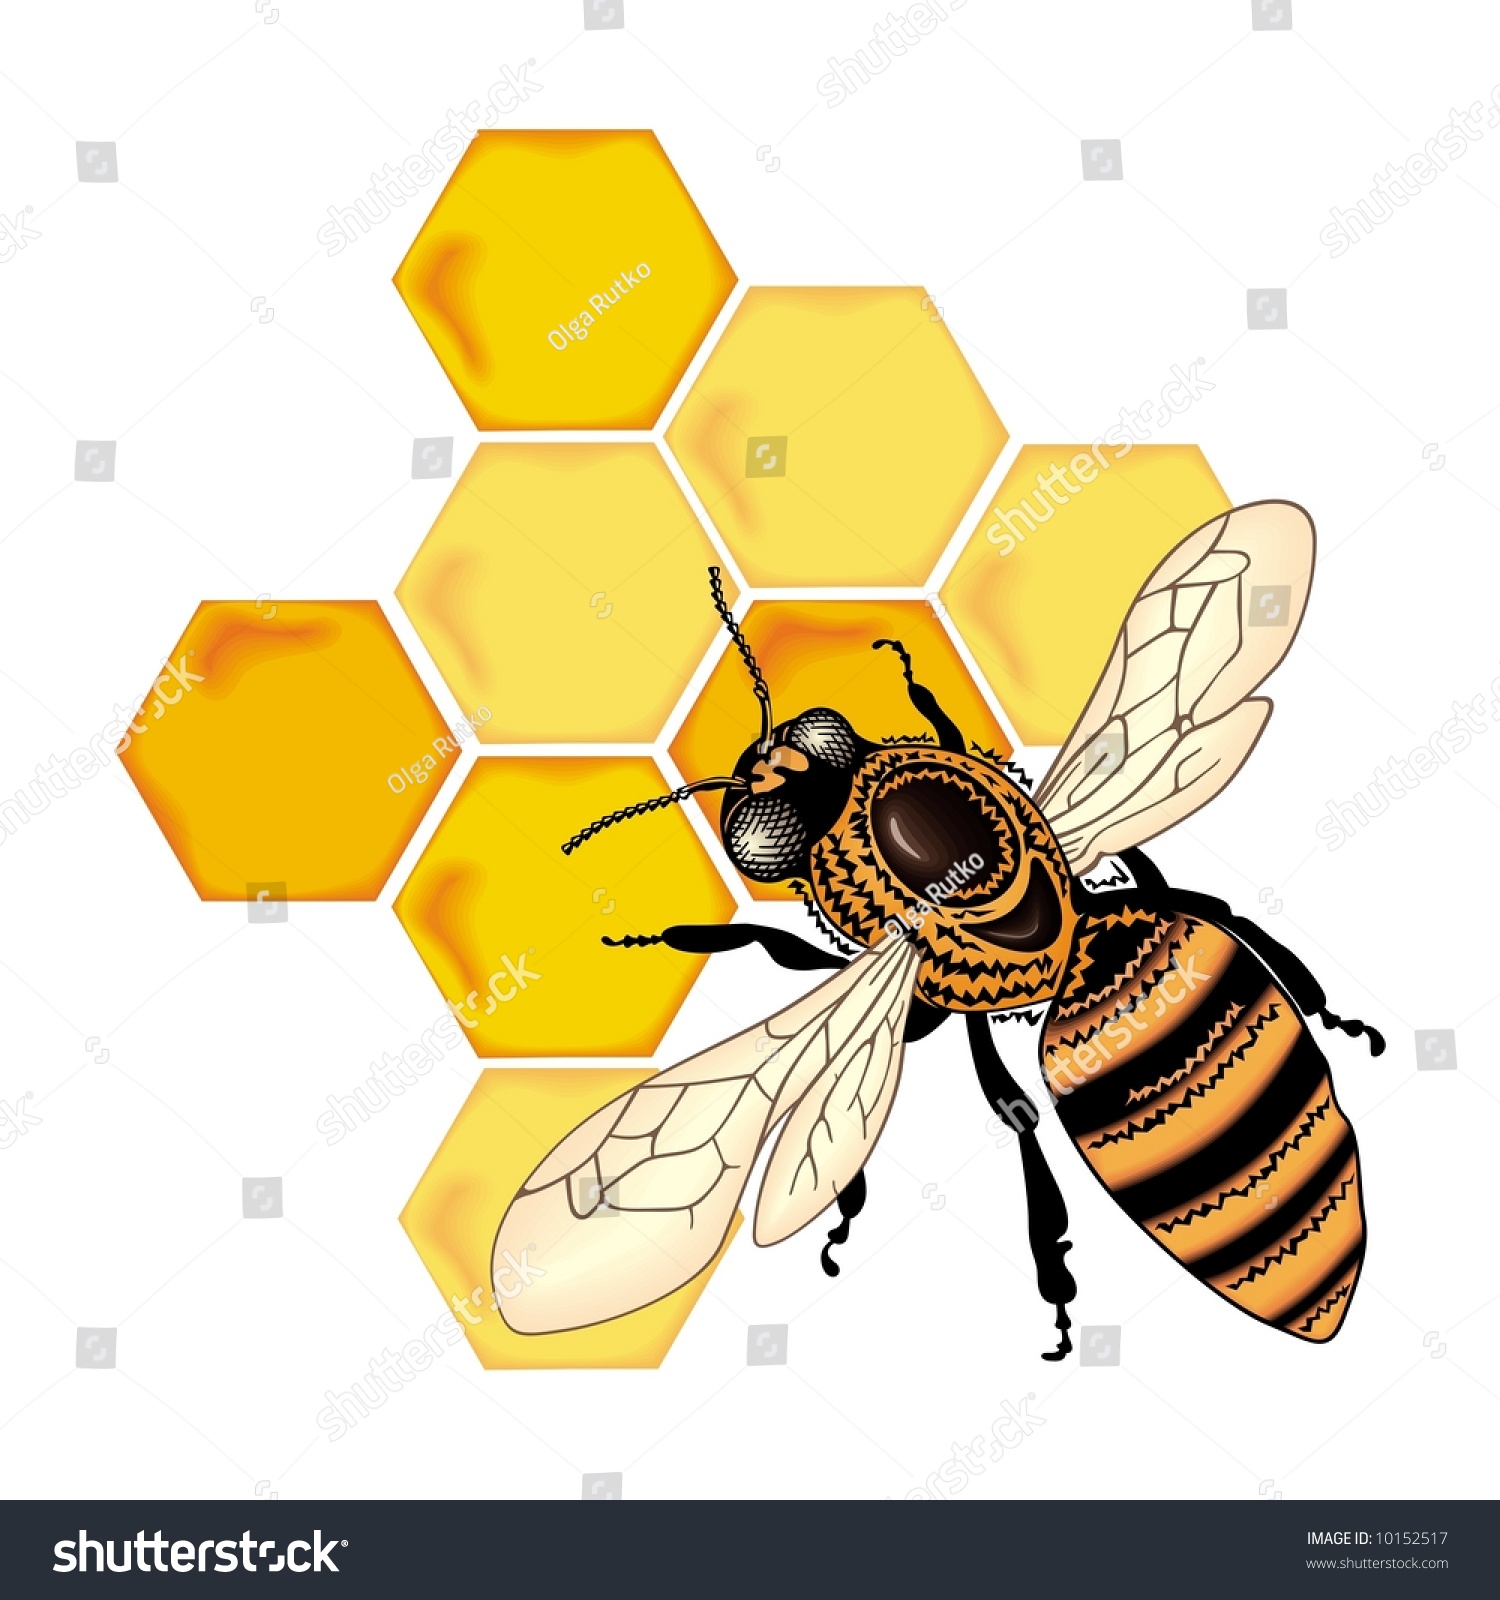 Bee Vector - 10152517 : Shutterstock